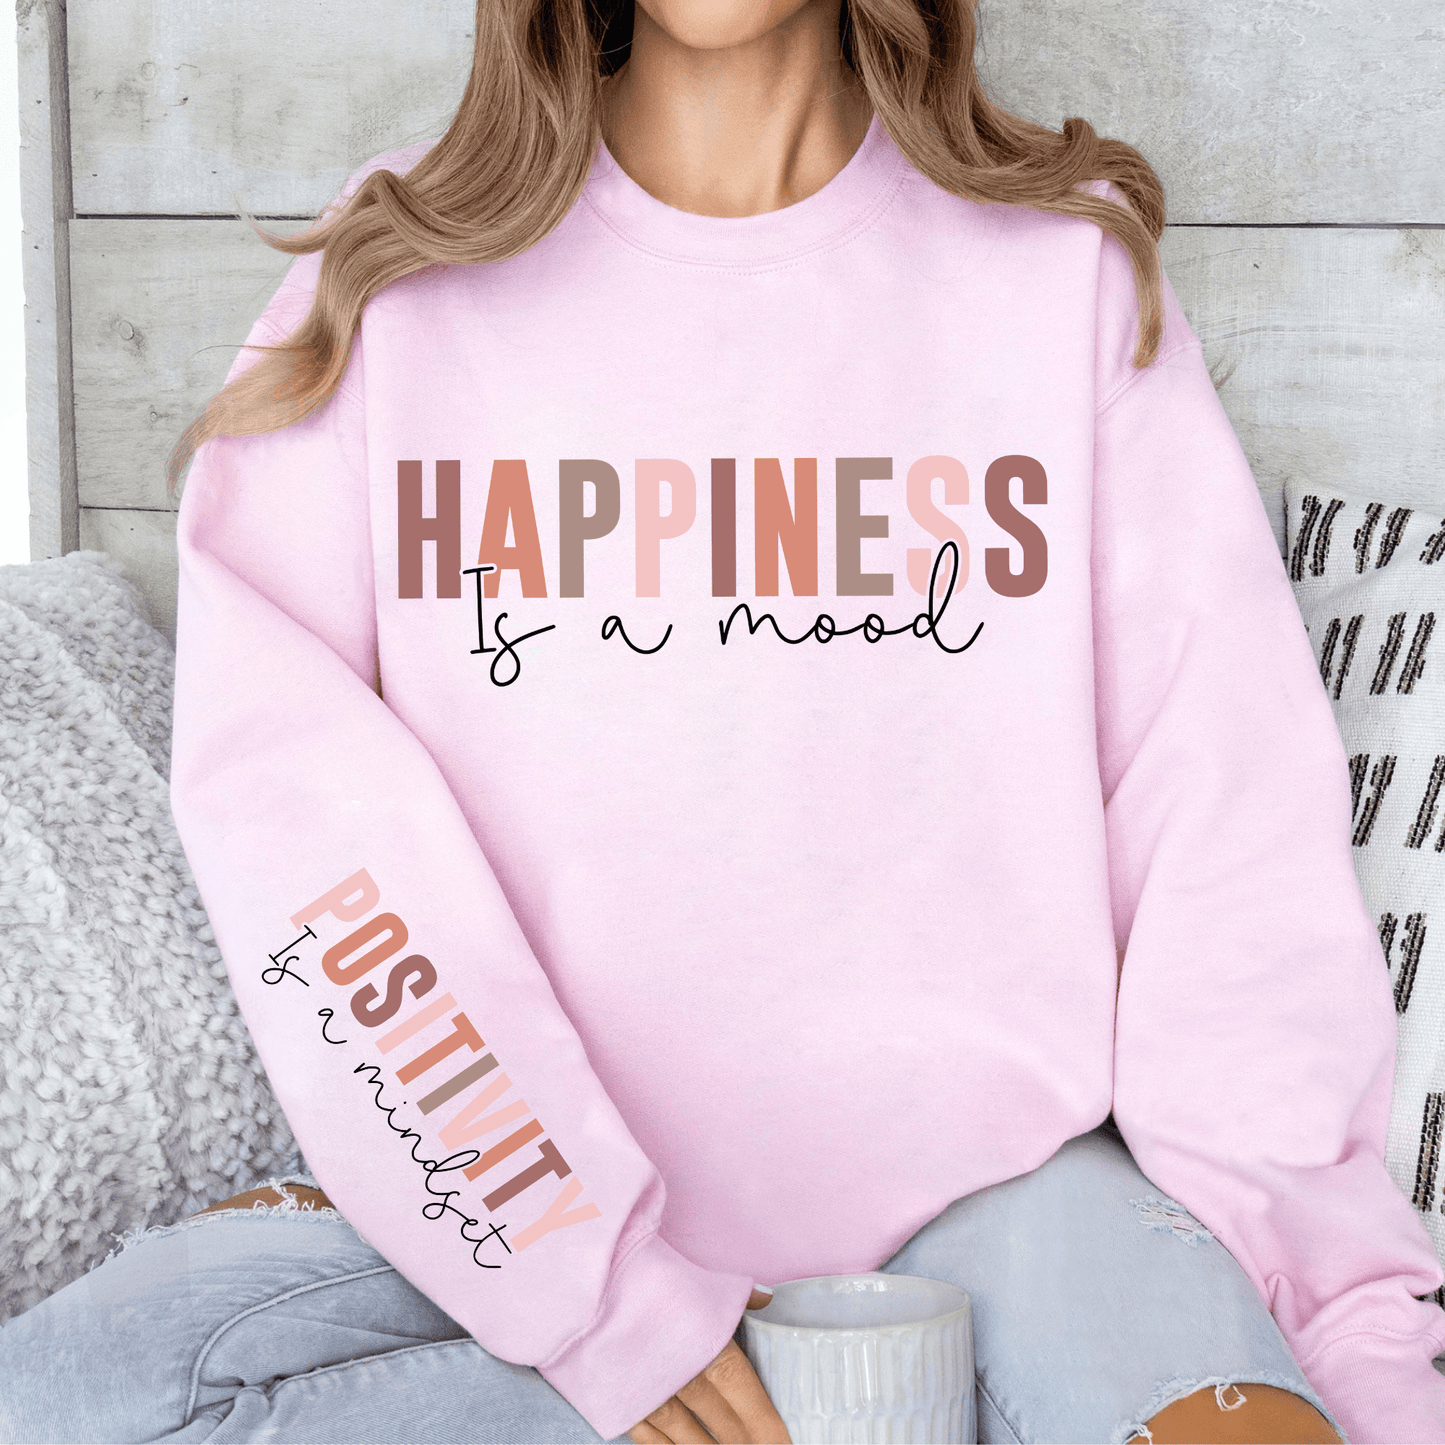 Glück & Positivität Sweatshirt - Inspirierendes Geschenk für Optimisten - Mit Positiver Botschaft - GiftHaus